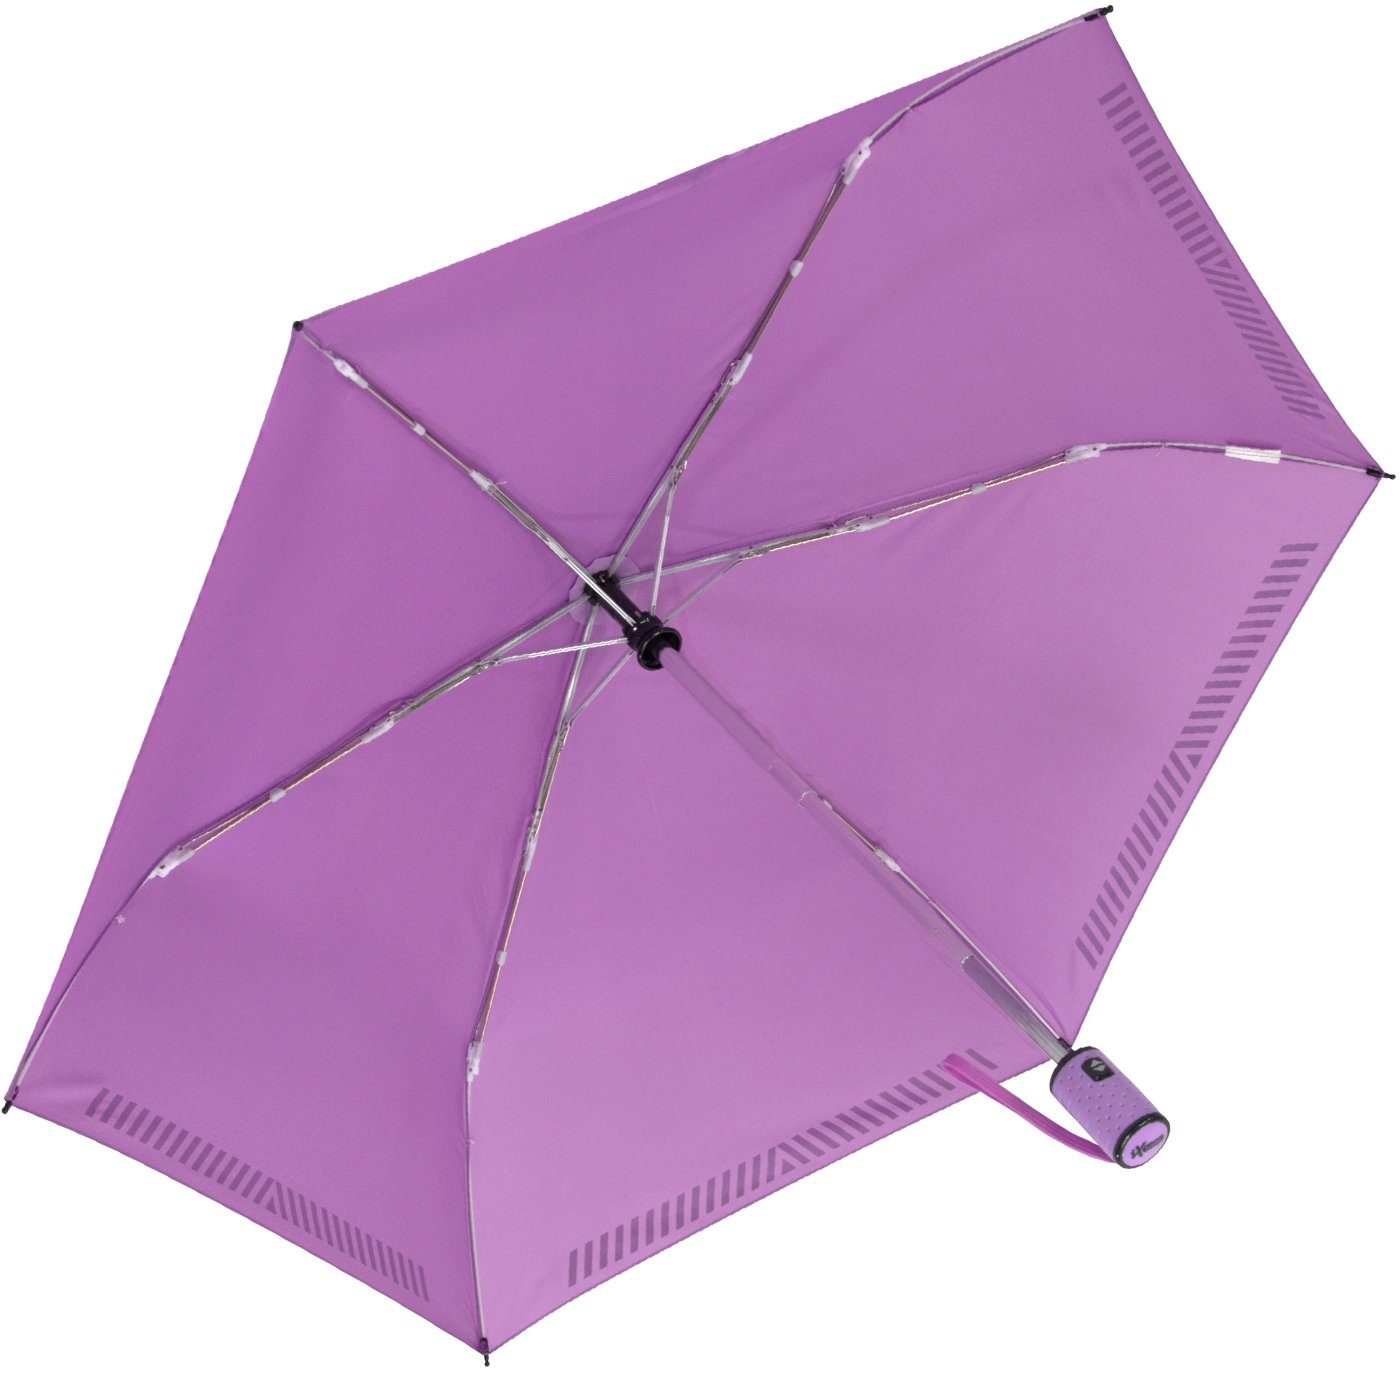 durch Reflex-Streifen Auf-Zu-Automatik, mit - iX-brella Taschenregenschirm reflektierend, hell-lila Sicherheit Kinderschirm